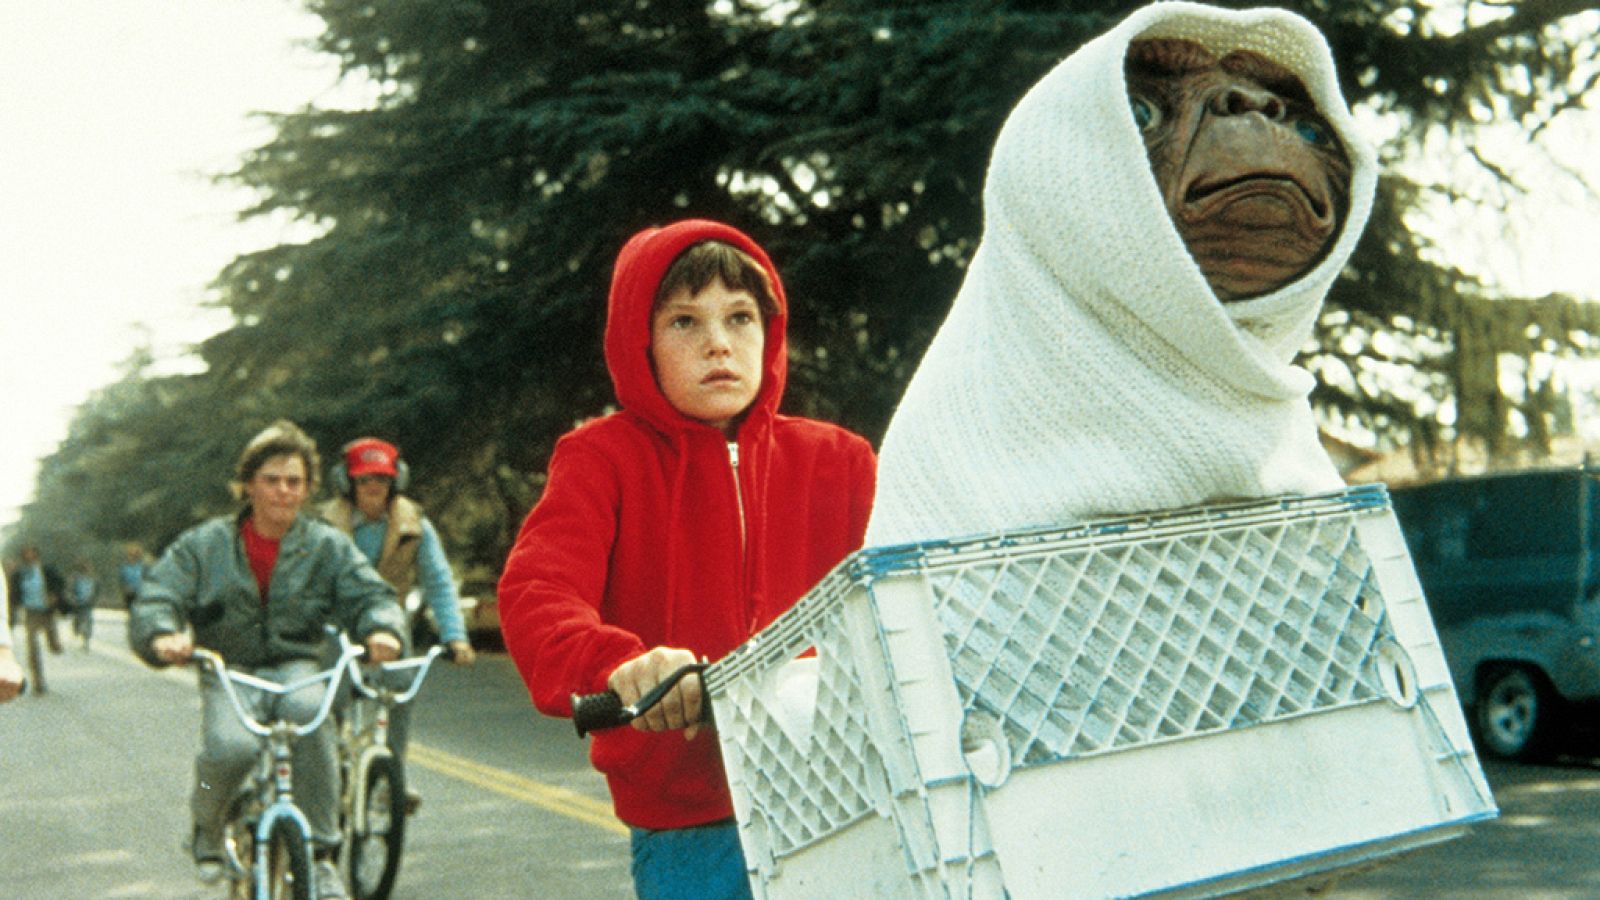 E.T”, 40 años después: historia de un clásico que iba a ser una